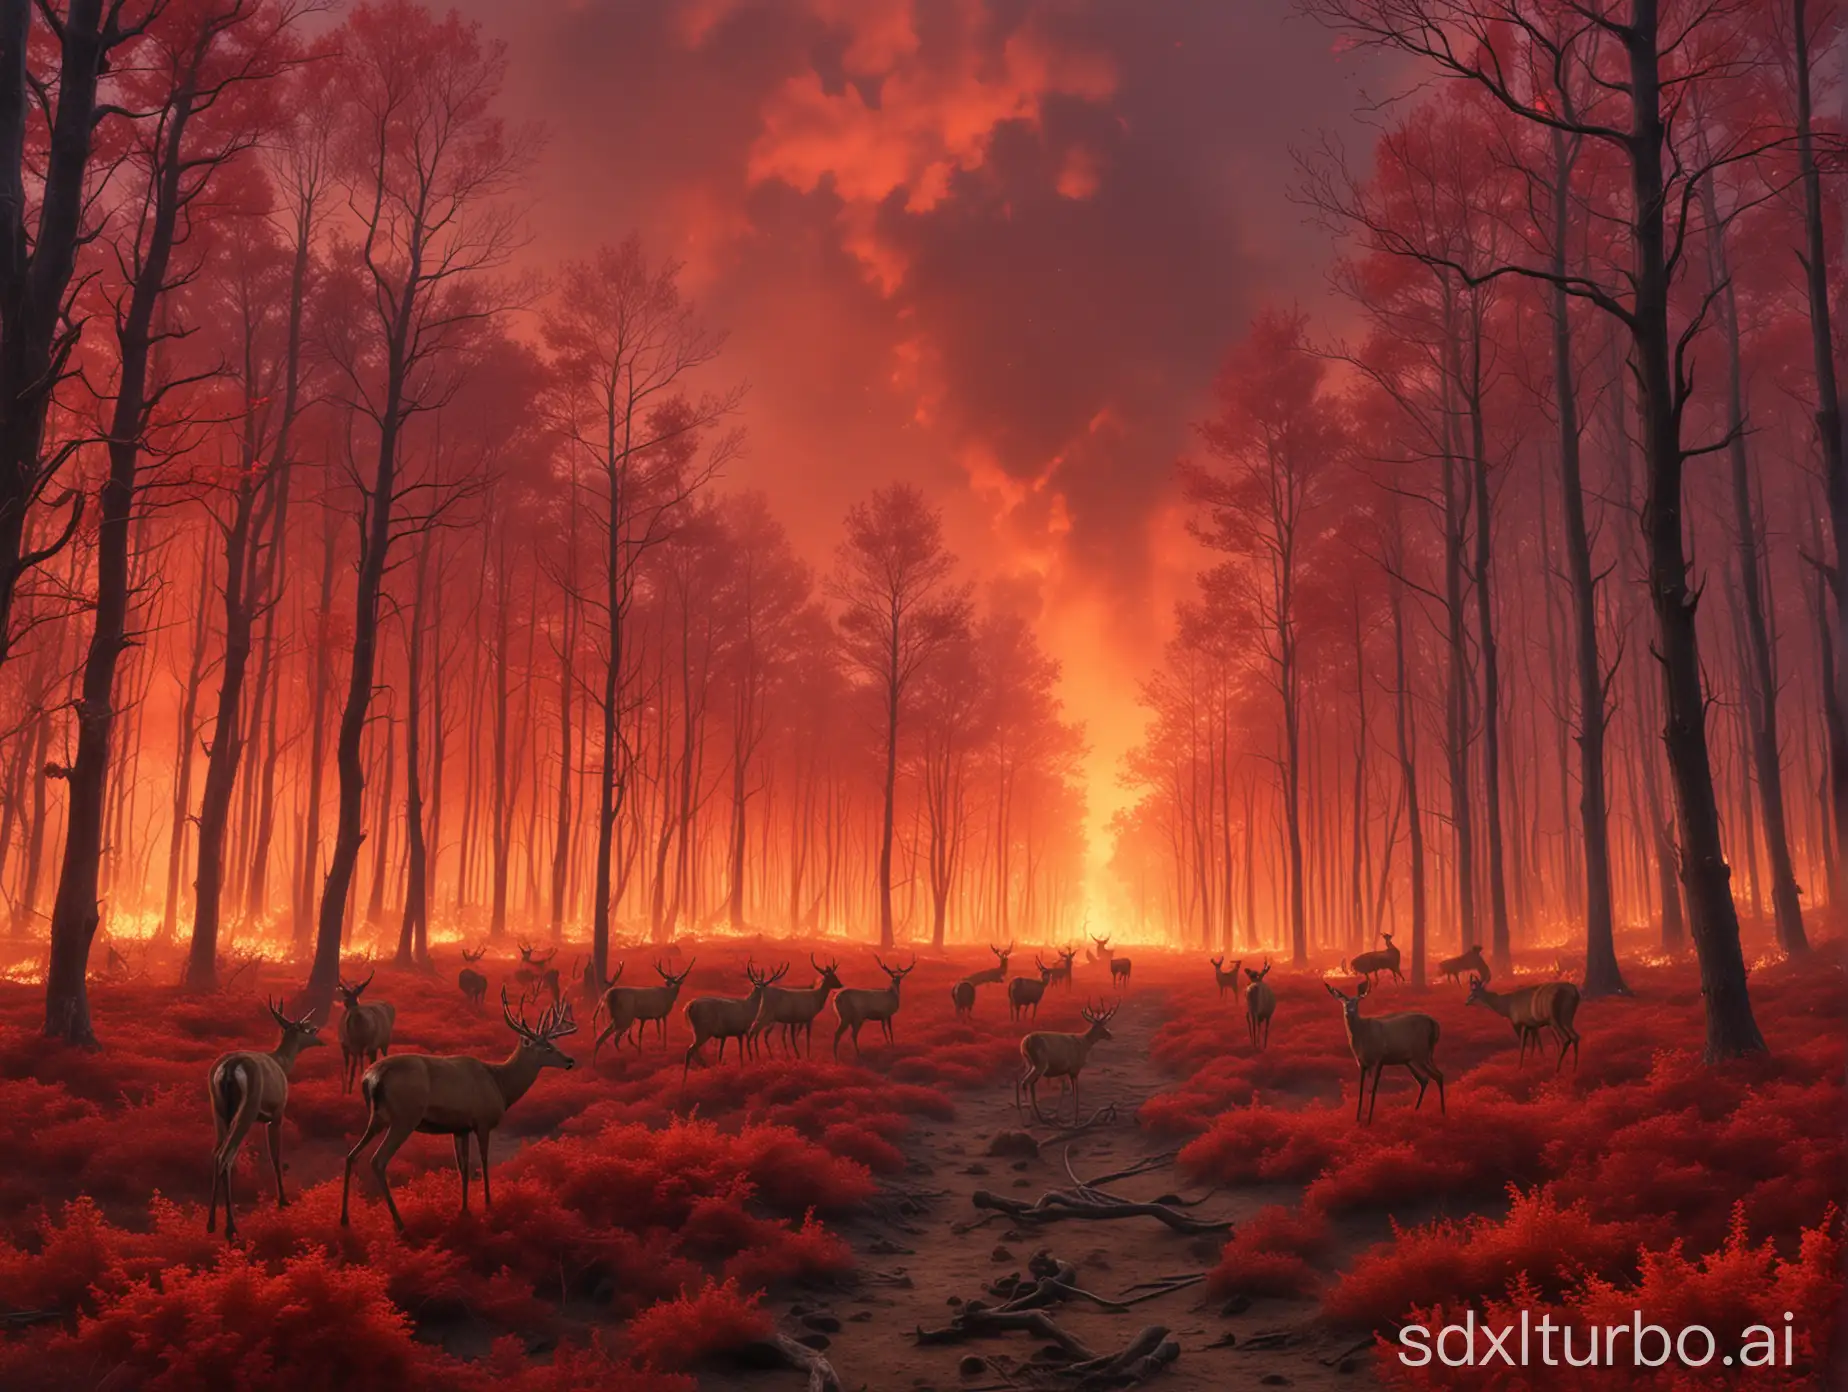 一个燃烧的森林，血色的天空，一群鹿从森林中逃窜出来